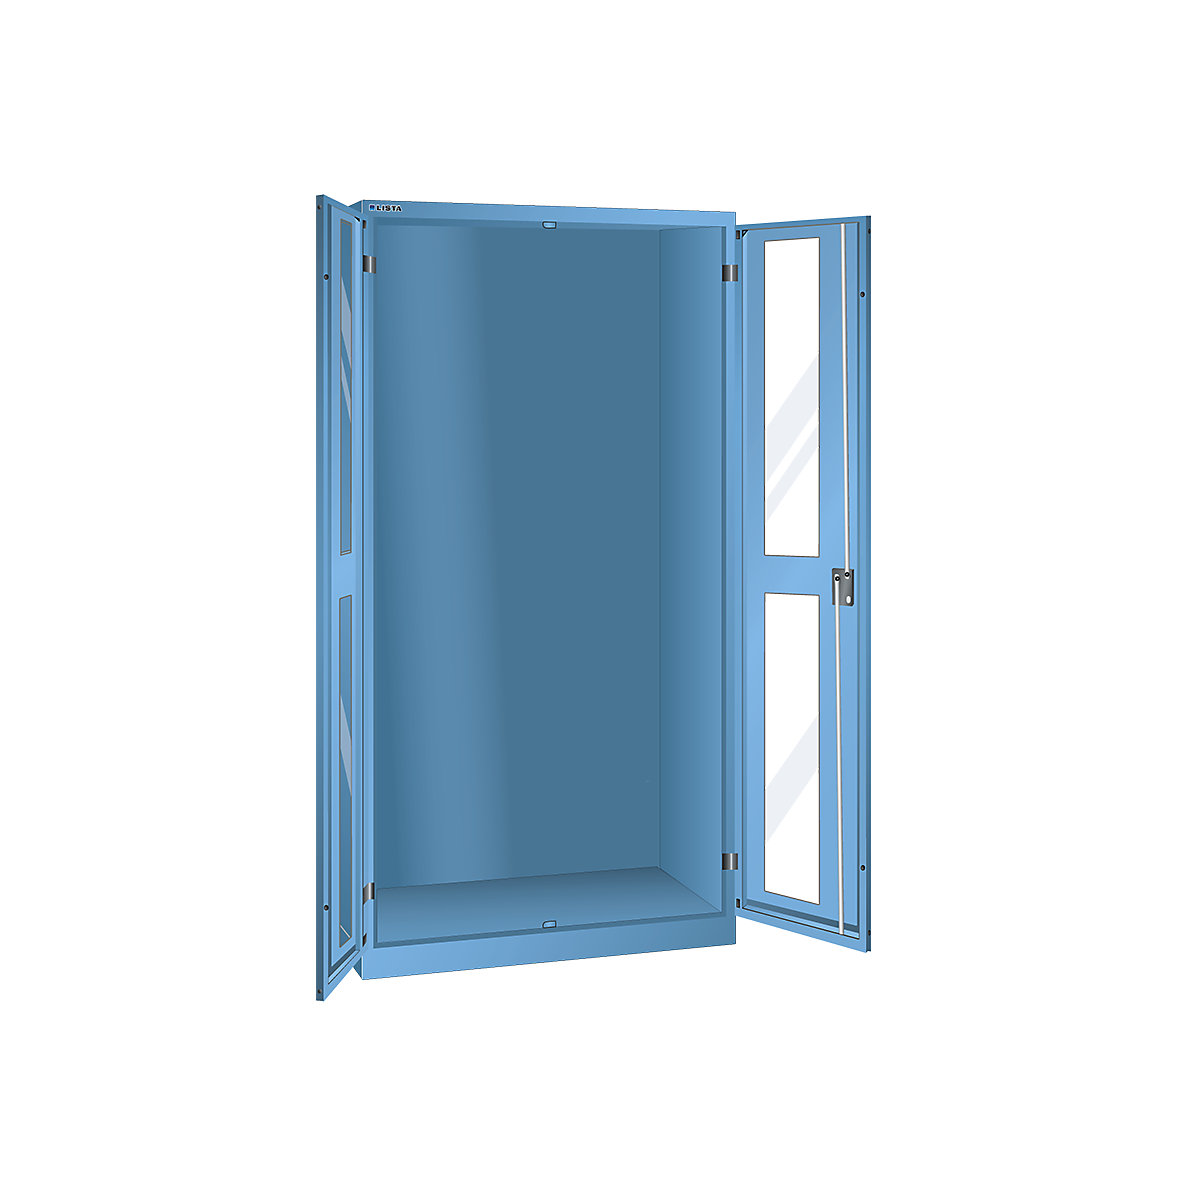 Armoire vitrée, h x l x p 1950 x 1000 x 580 mm – LISTA, armoire vide, bleu clair-8